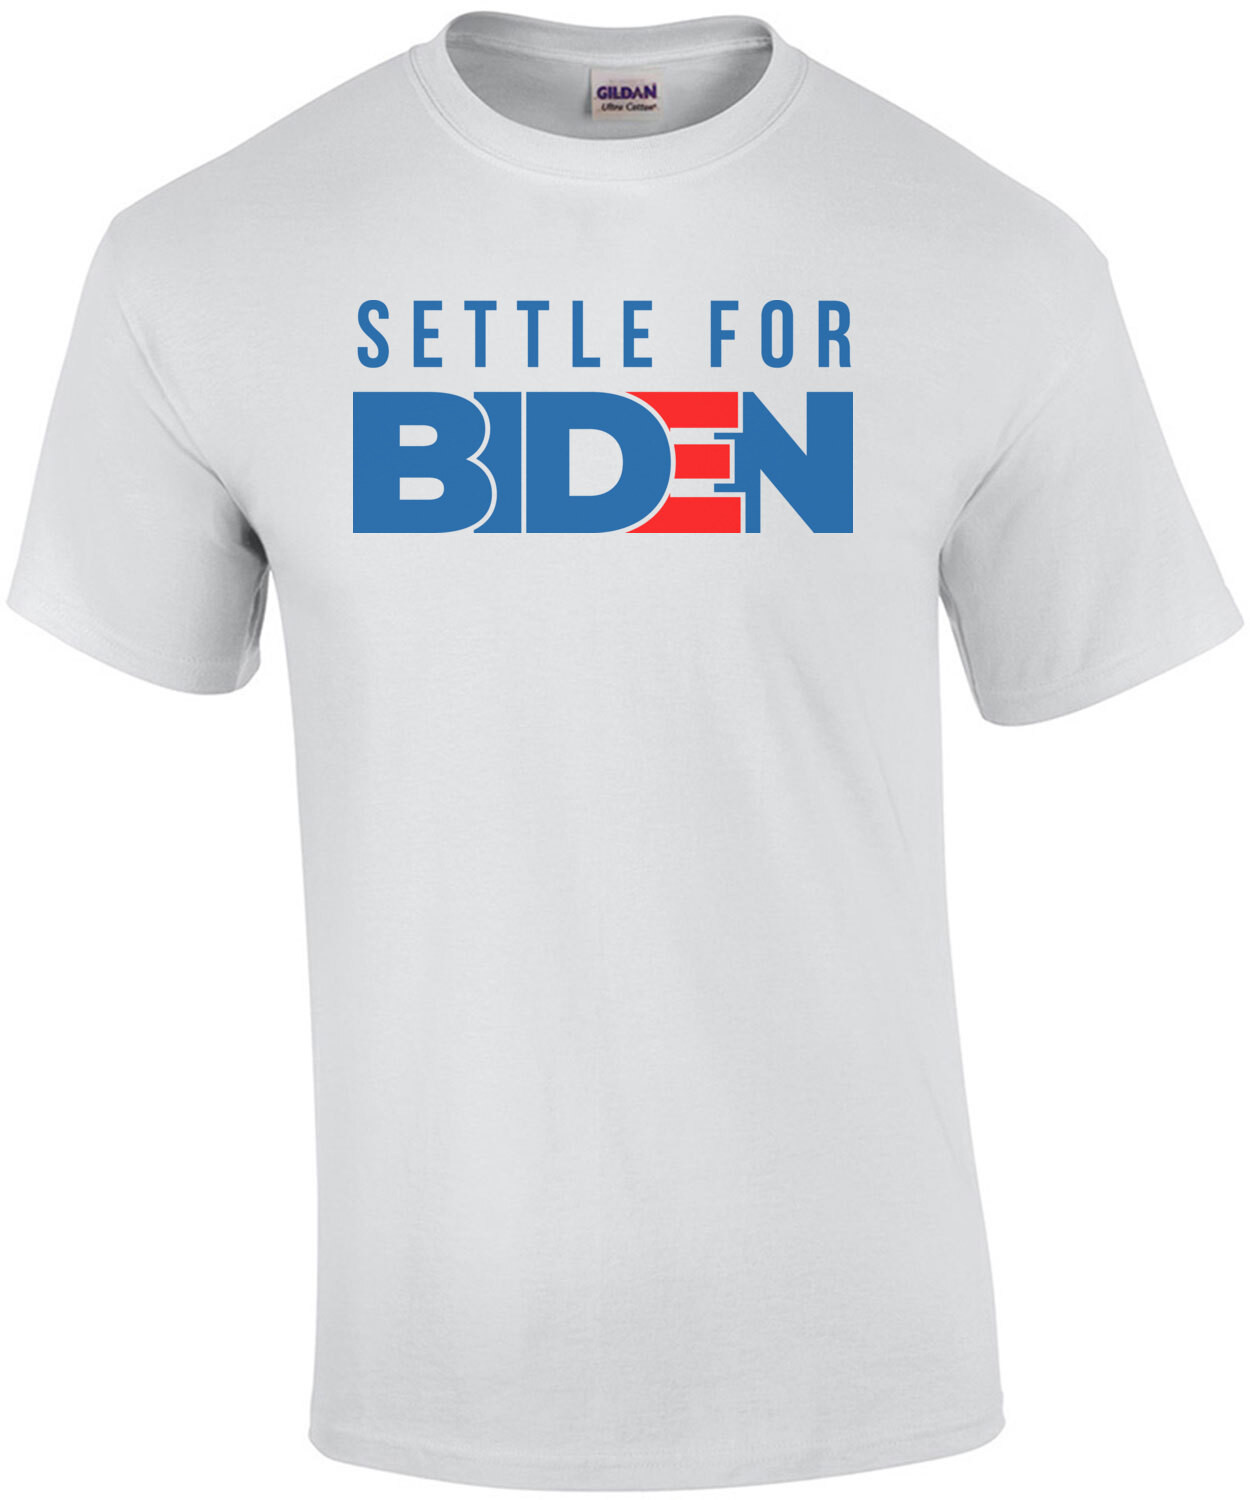 Settle For Biden - 2020 Election T-Shirt